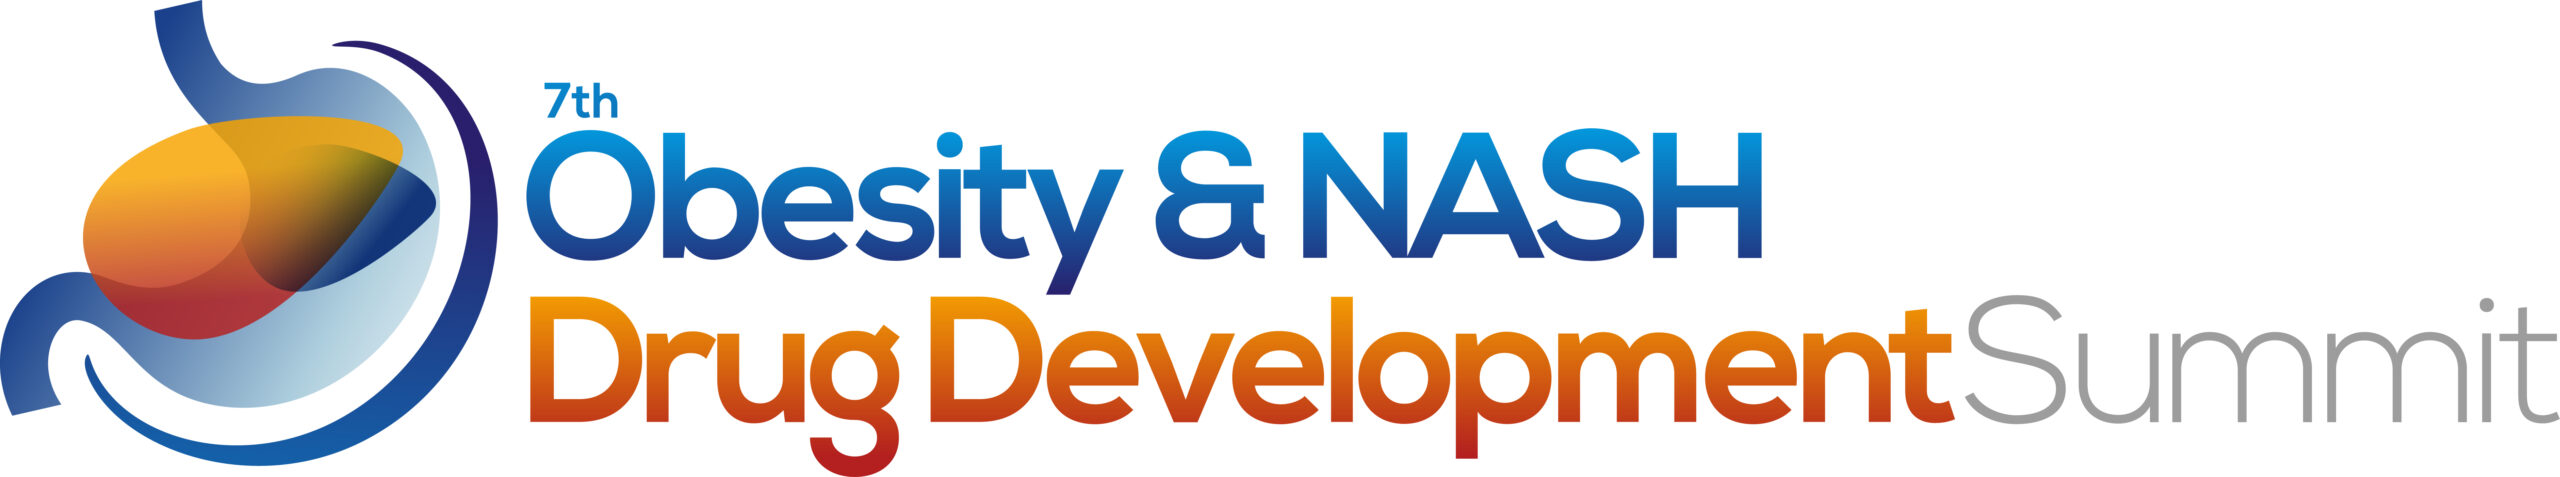 7th Obesity & NASH Drug Development Summit Logo